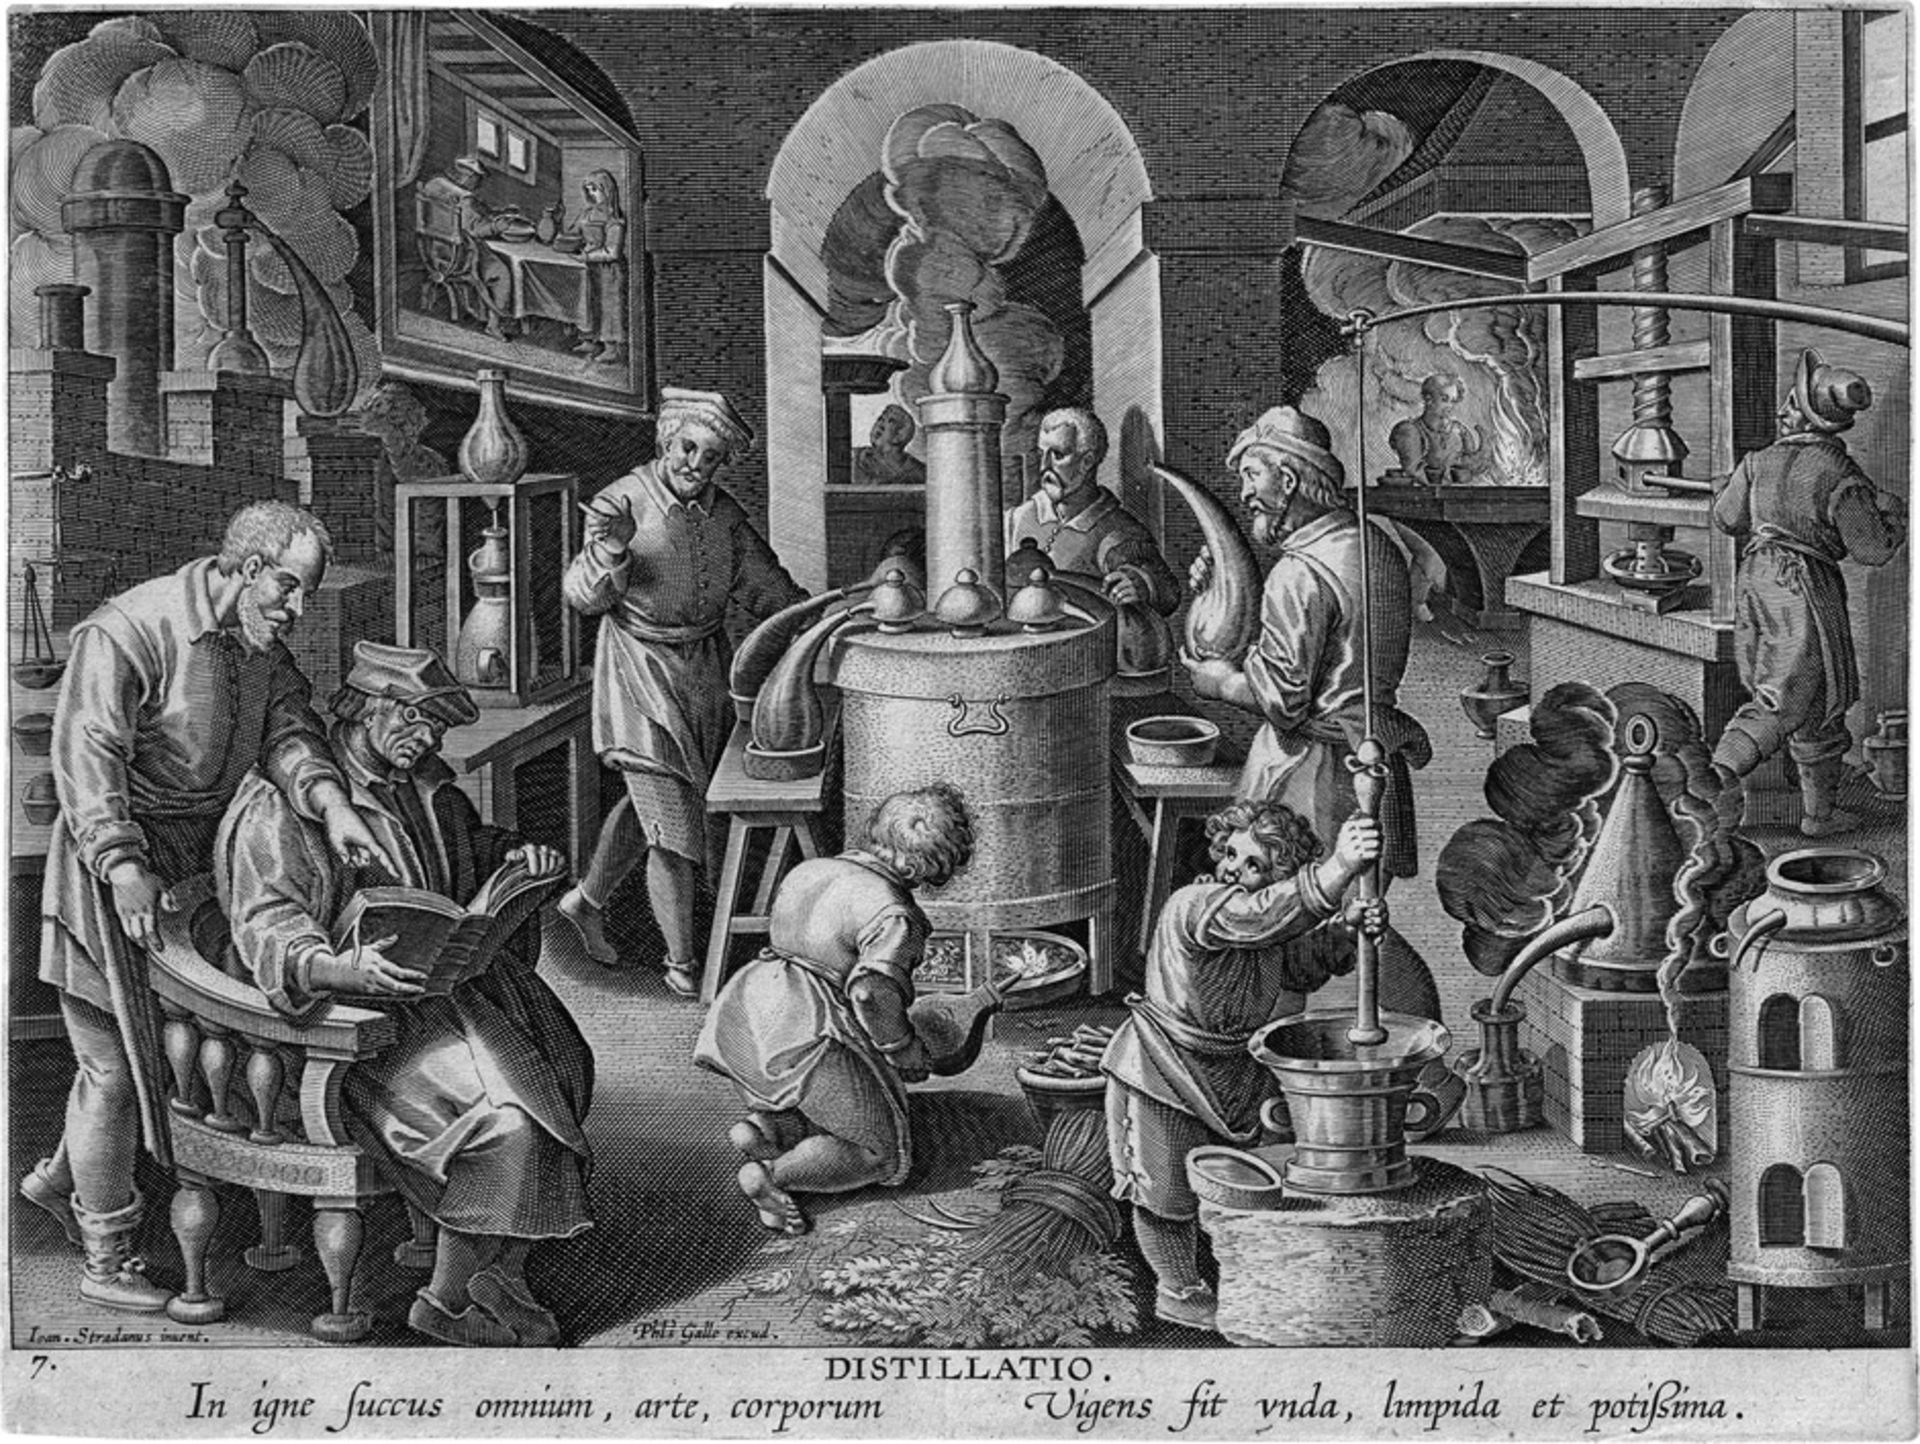 Stradanus, Johannes: Distillatio nach. Distillatio - Die Erfindung des Destillierens. Kupferstich